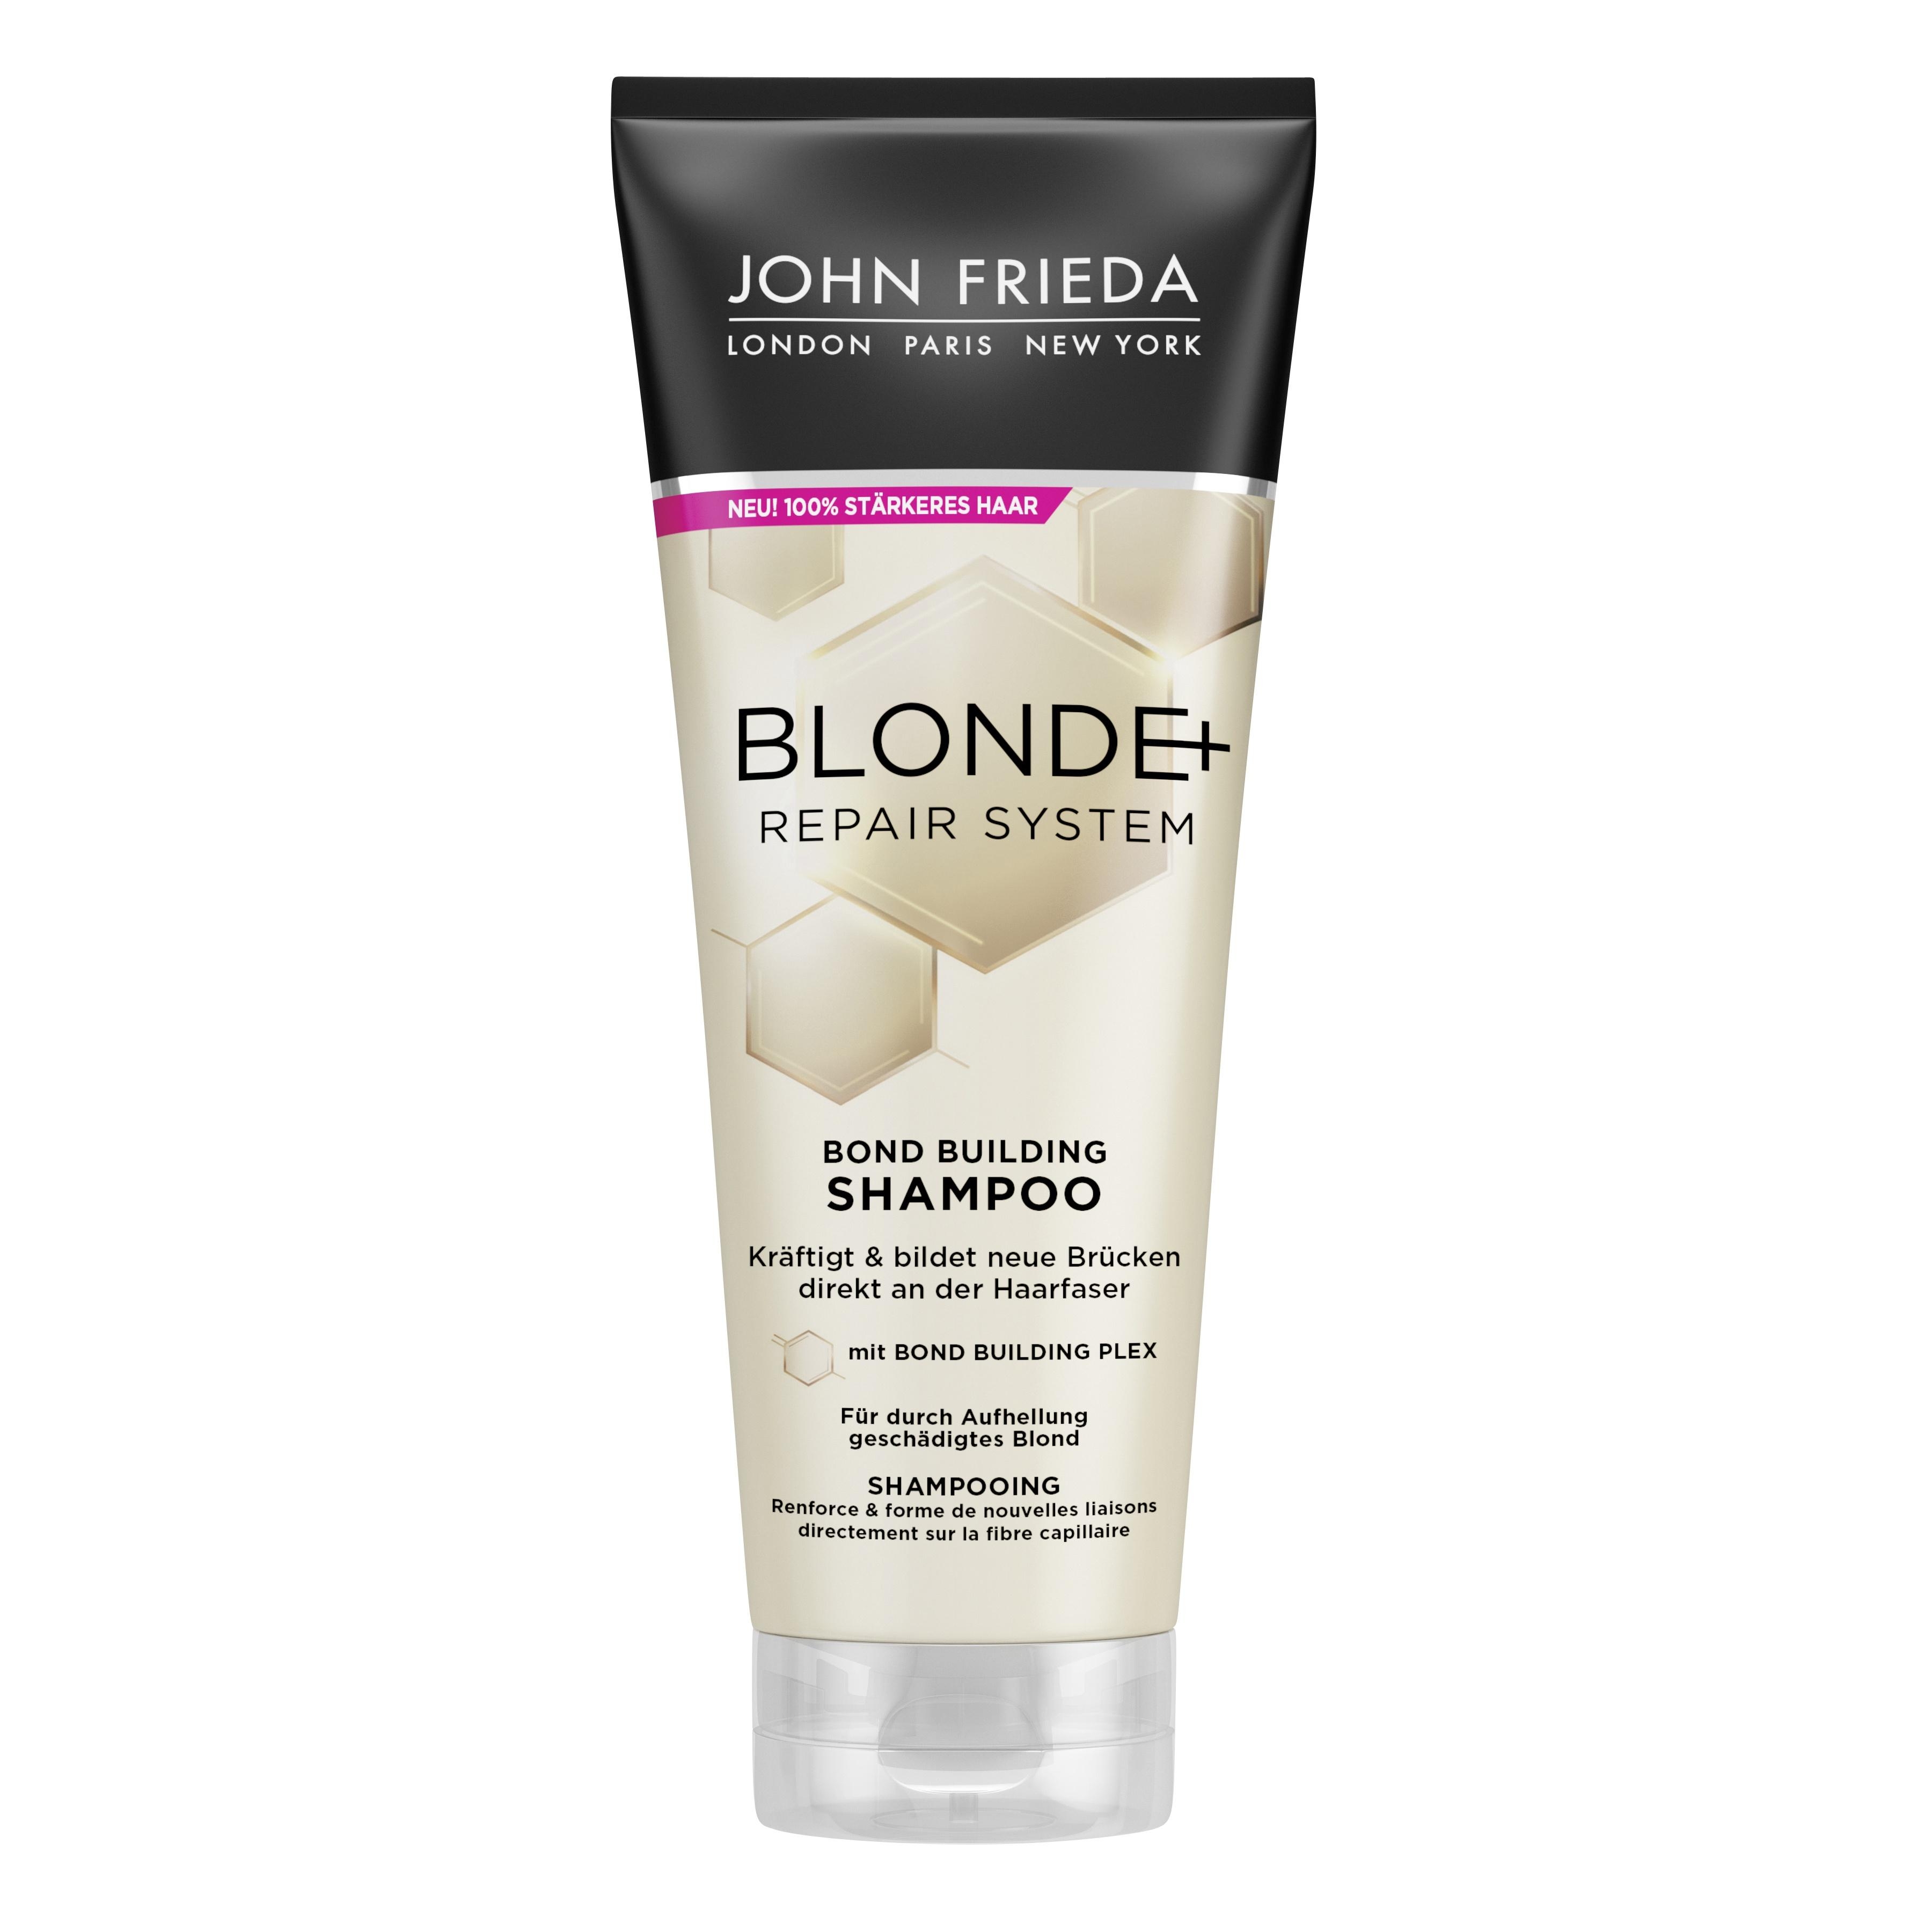 Produktbild von Blonde+ Repair System - Blonde+ Bond Builiding Shampoo